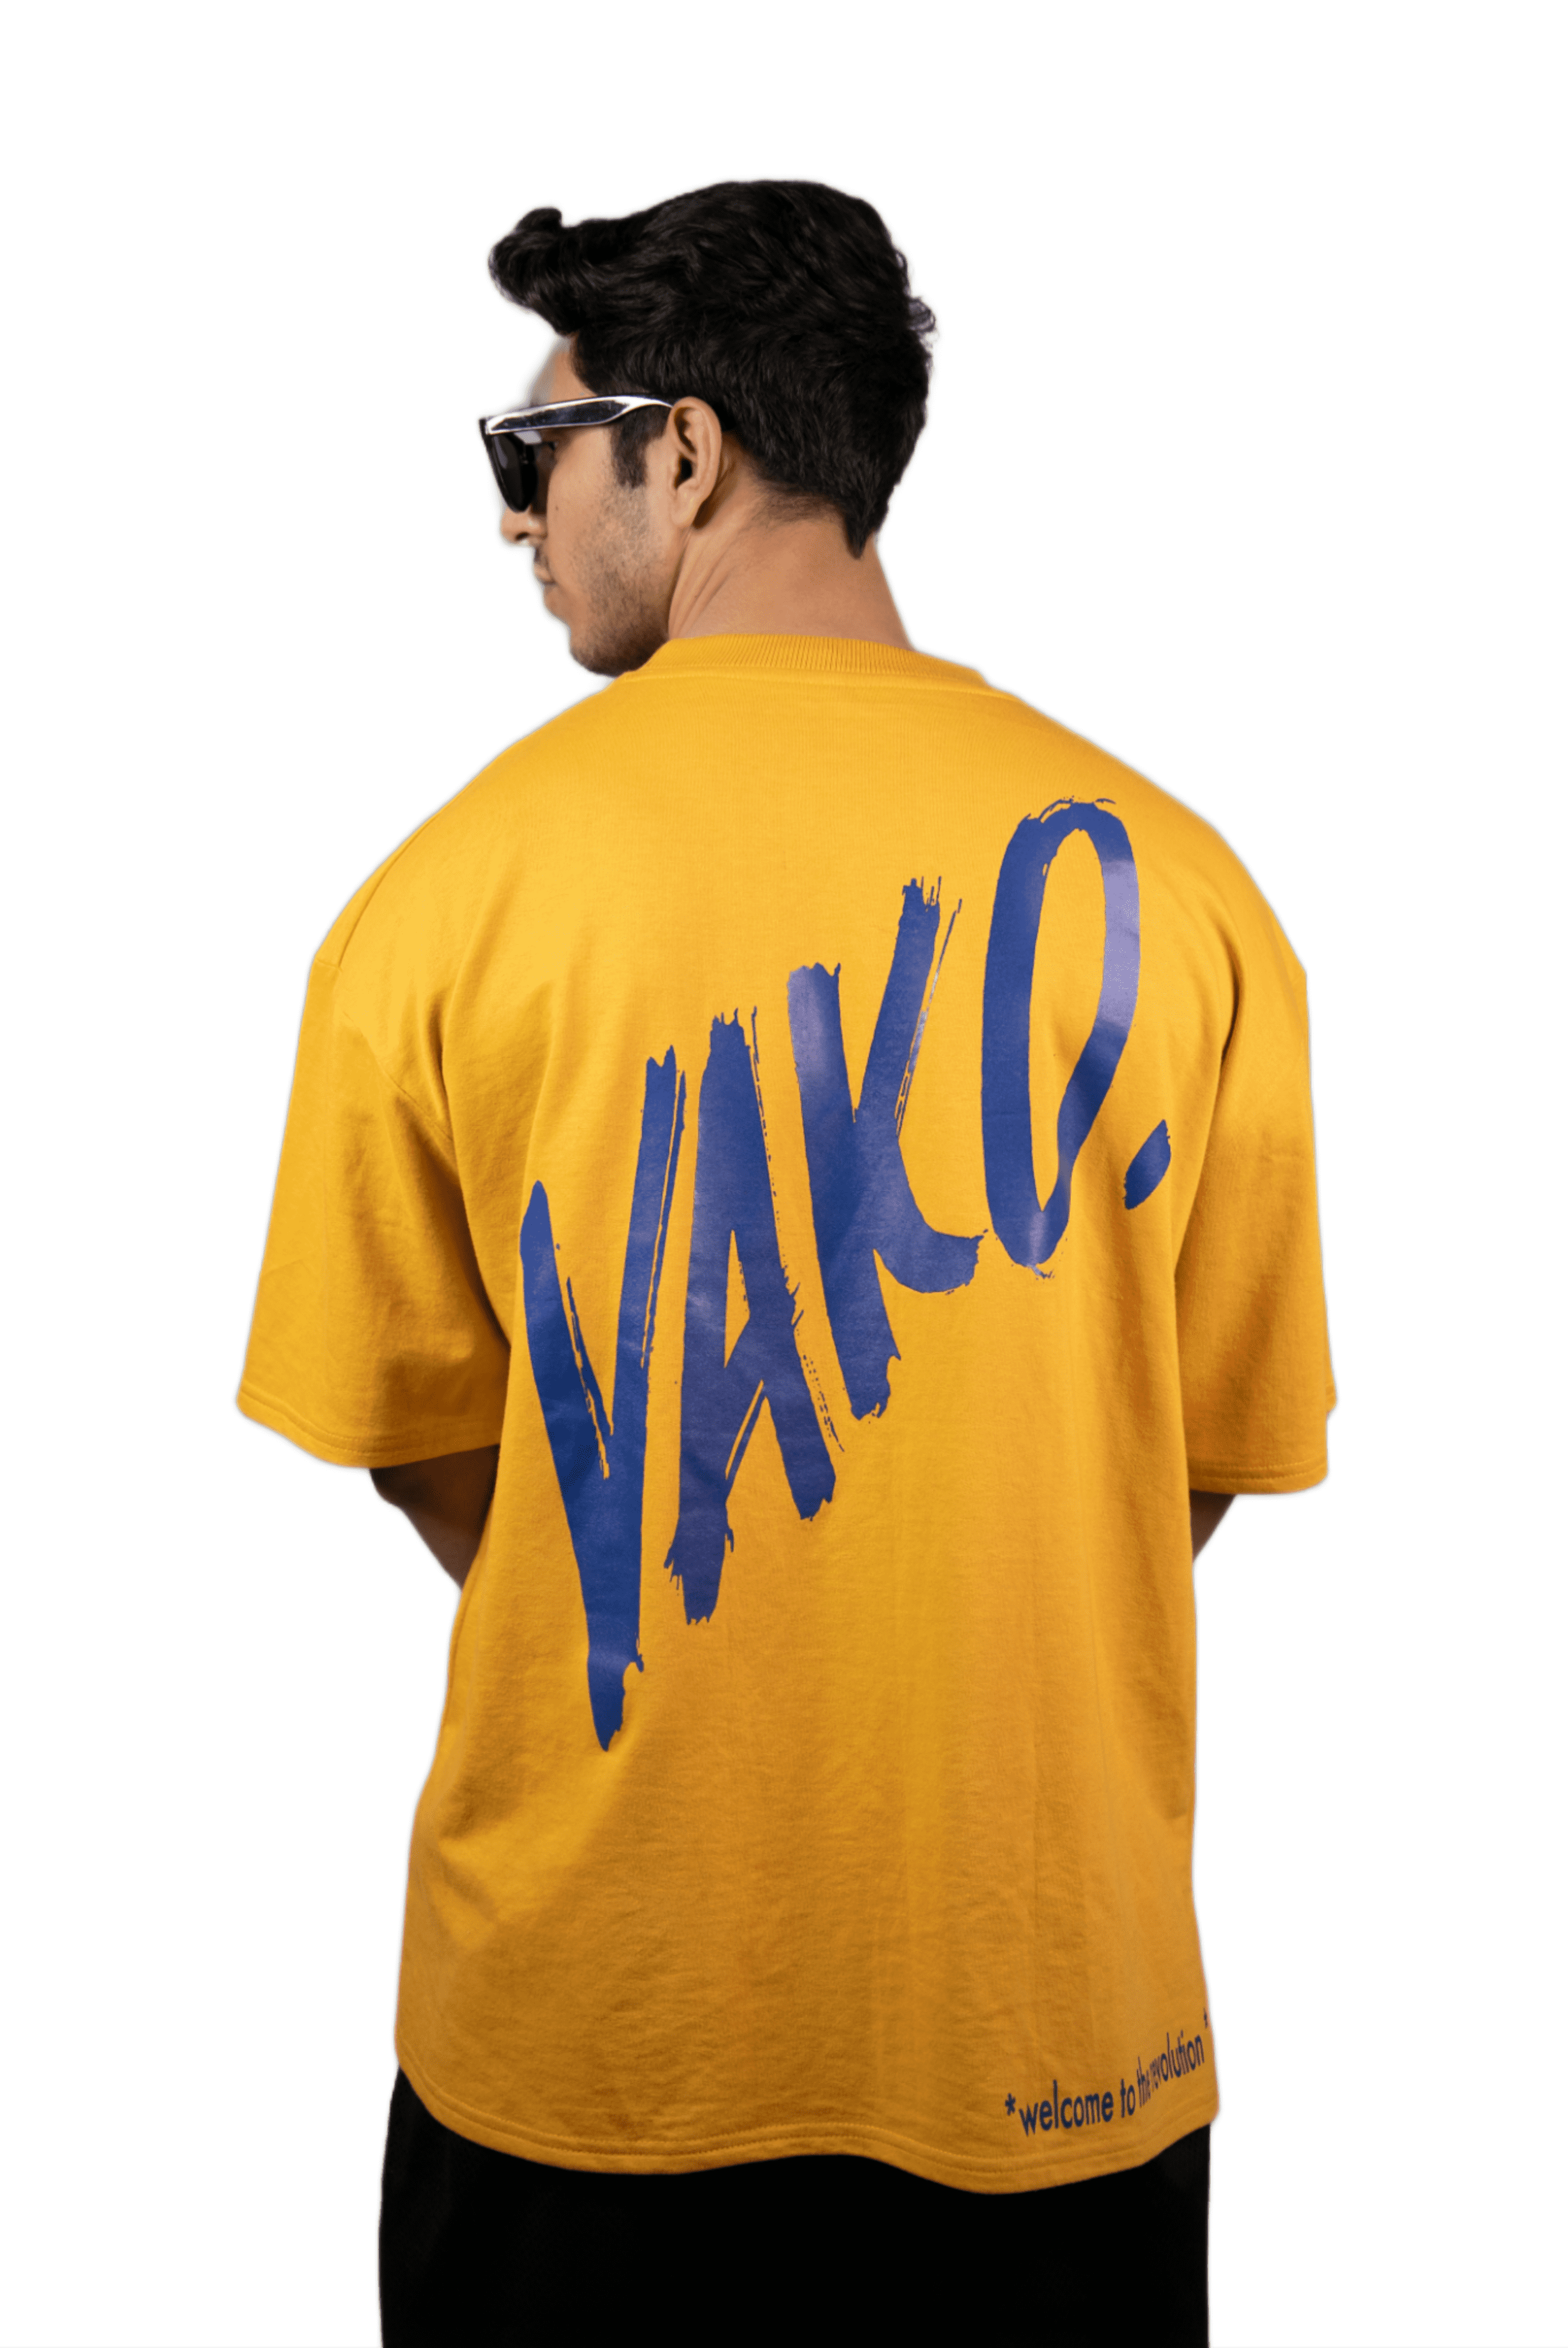 VAKO Welcome To The Revolution Mustard T-Shirt